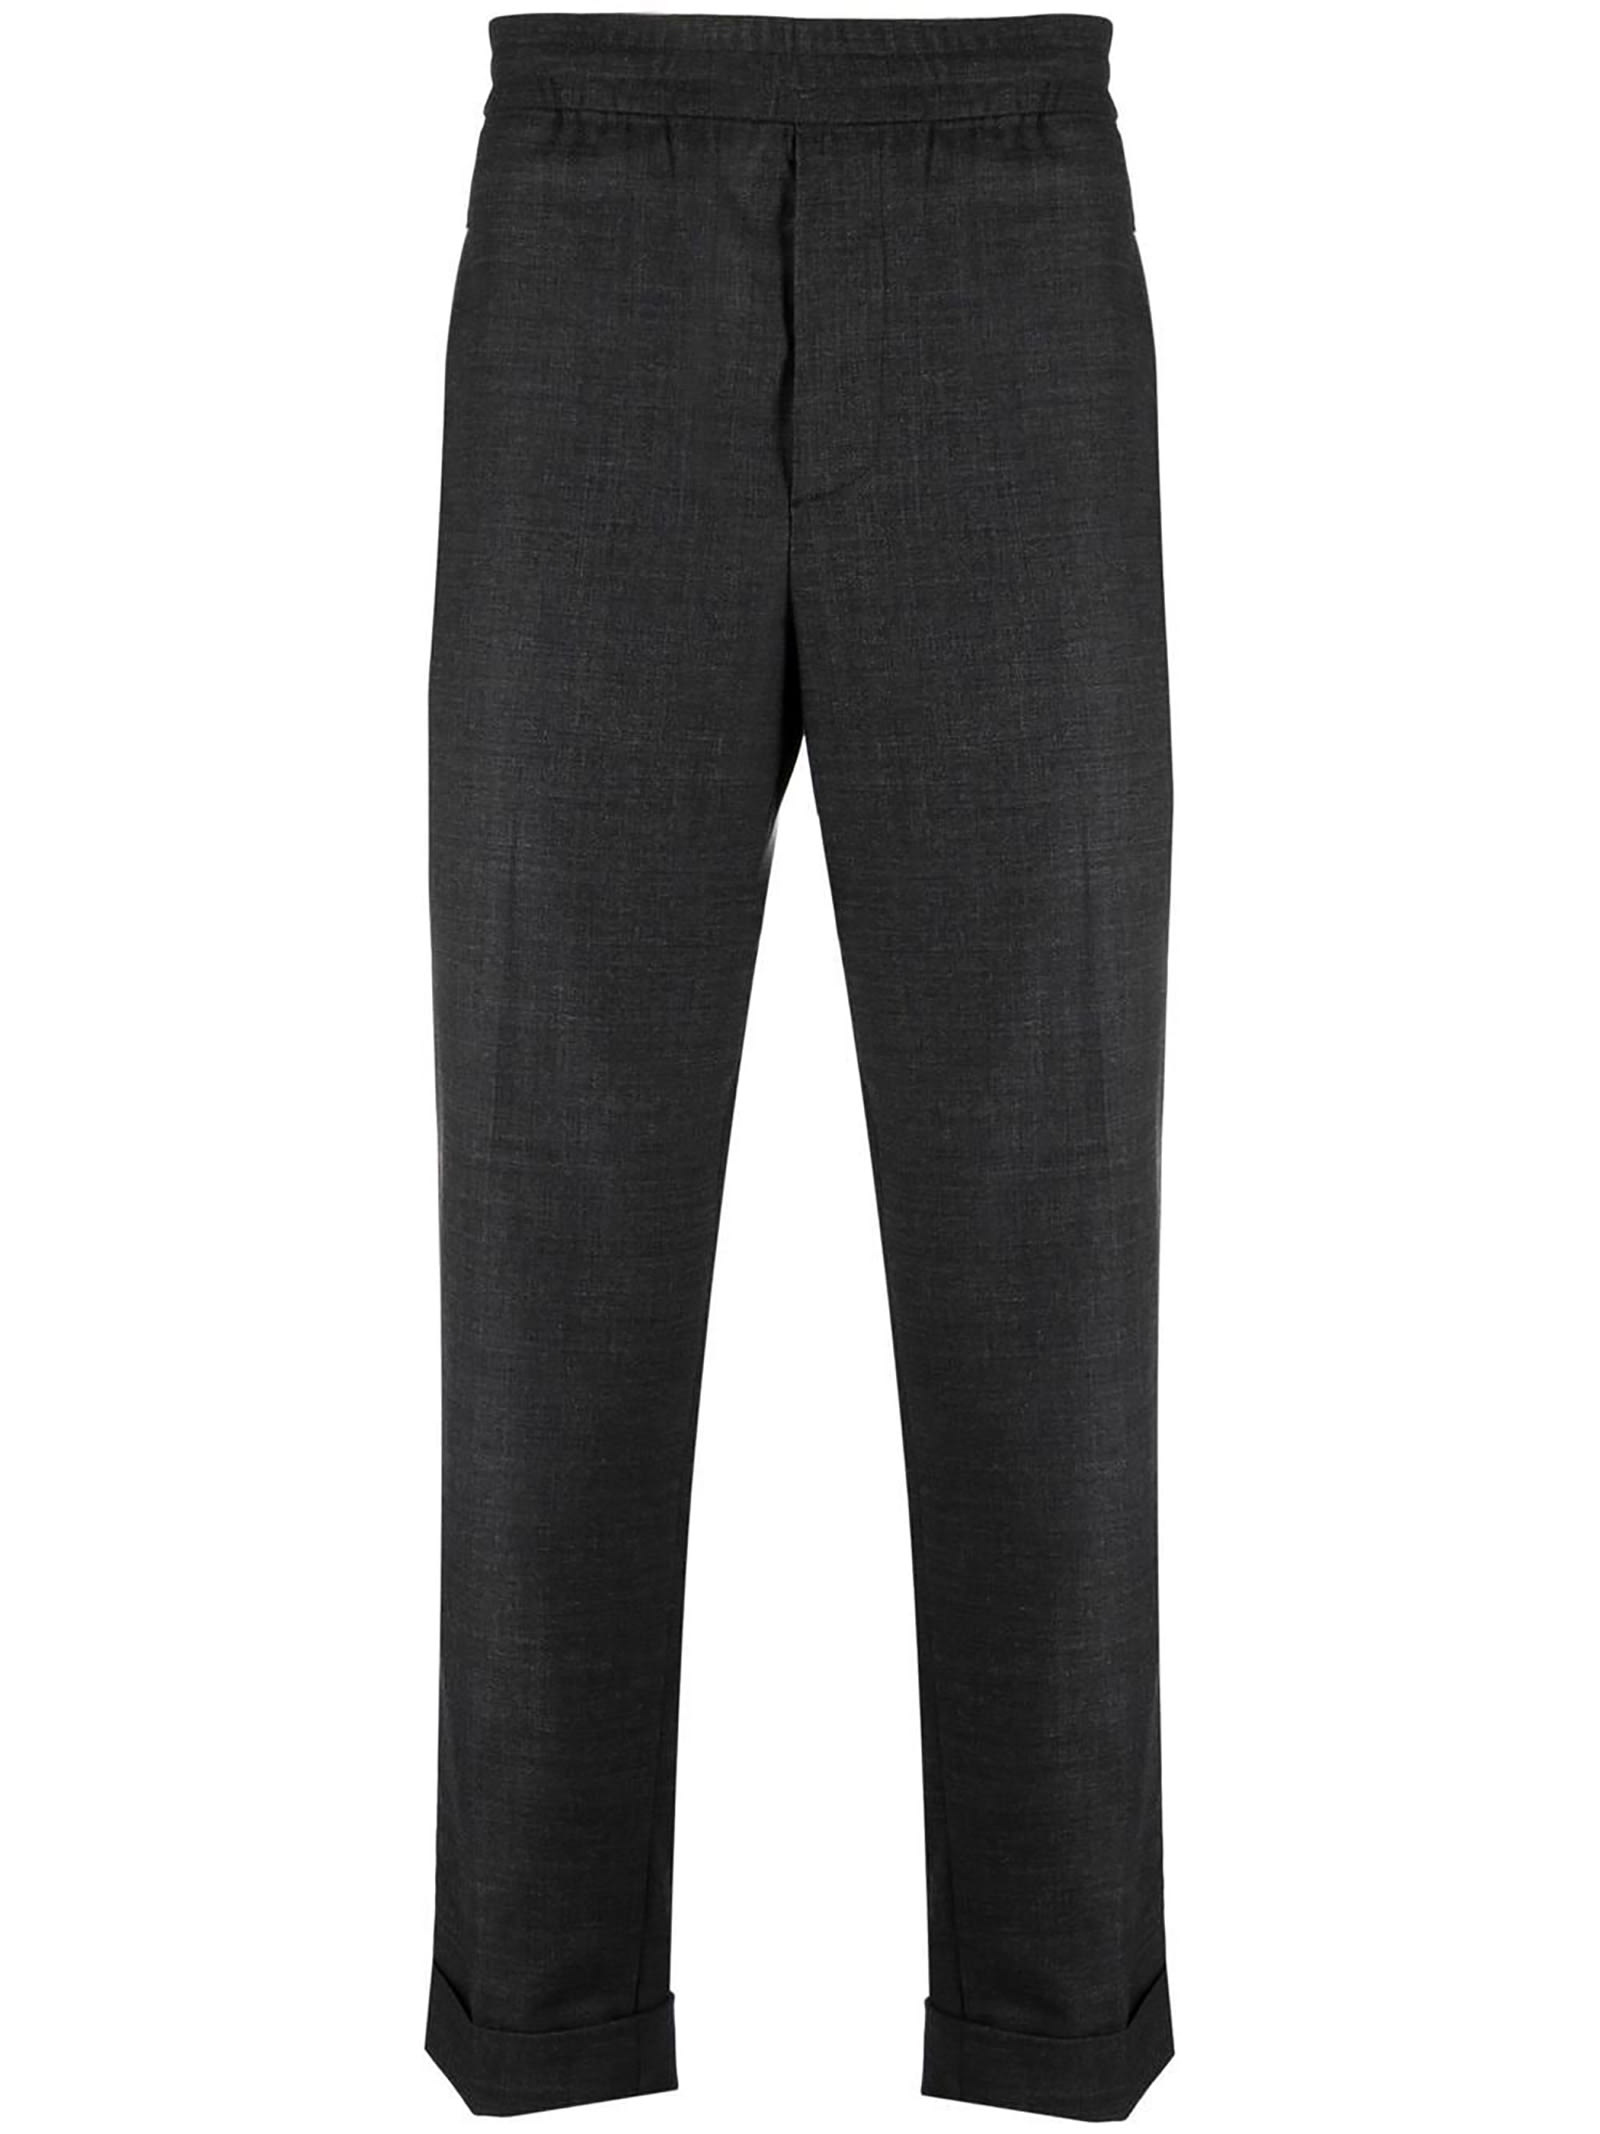 Neil Barrett Grey Wool Tailored Trousers